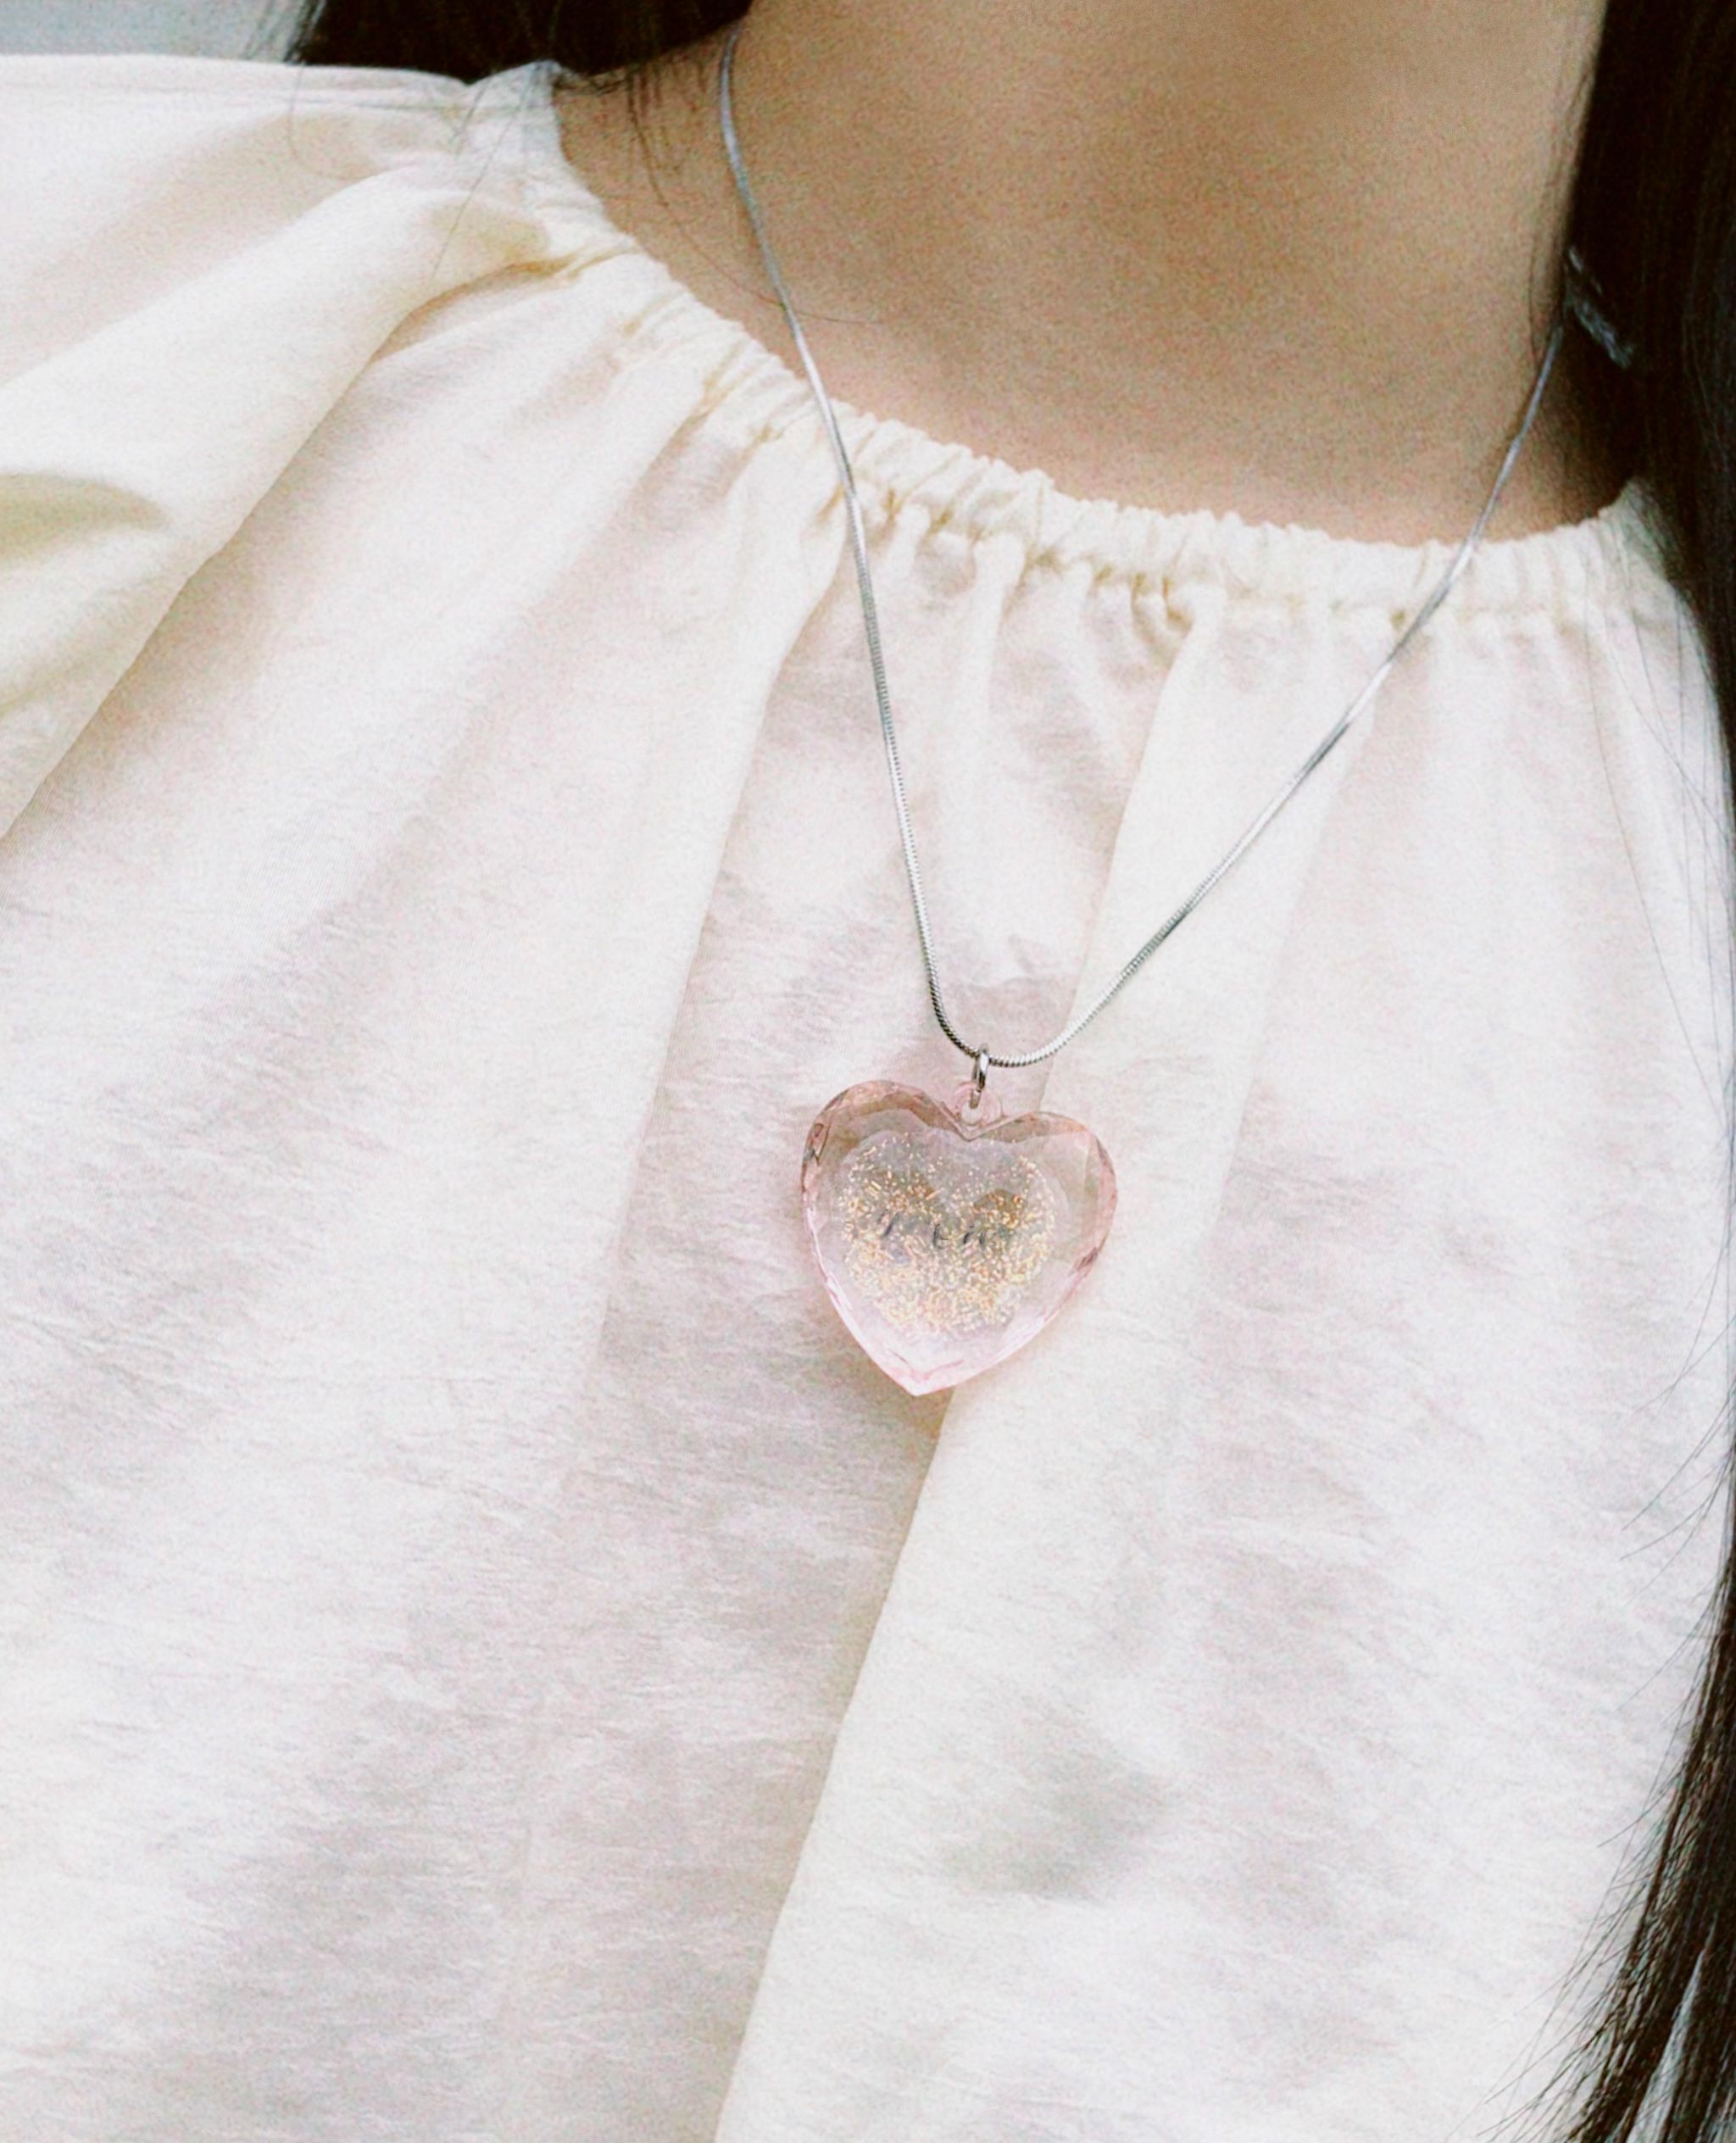 여성 주얼리, 하트 펜던트, 투명 플라스틱 하트, 뱀줄 목걸이, 스네이크체인 목걸이, 써클 목걸이, 하트 펜던트, 하트 목걸이, circle necklace, transparent heart necklace